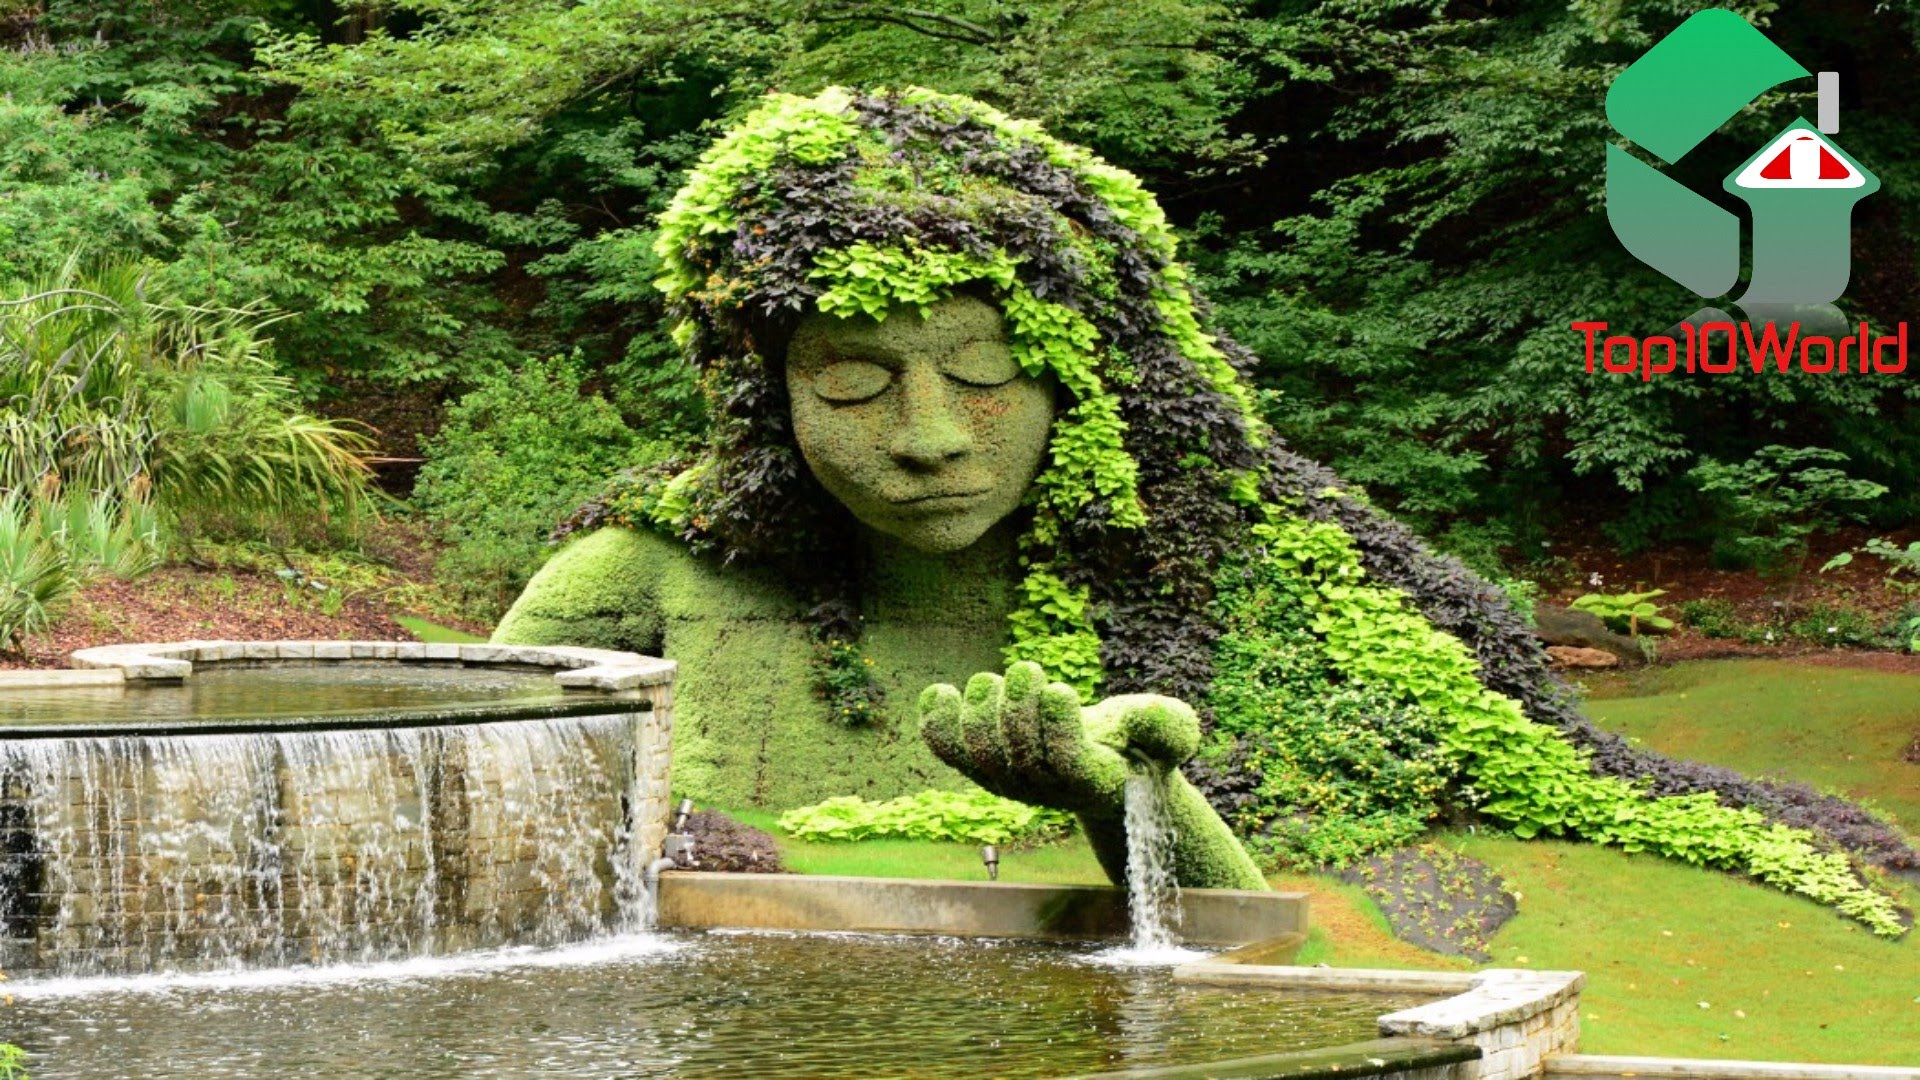 10 Most Amazing Botanical Gardens - YouTube